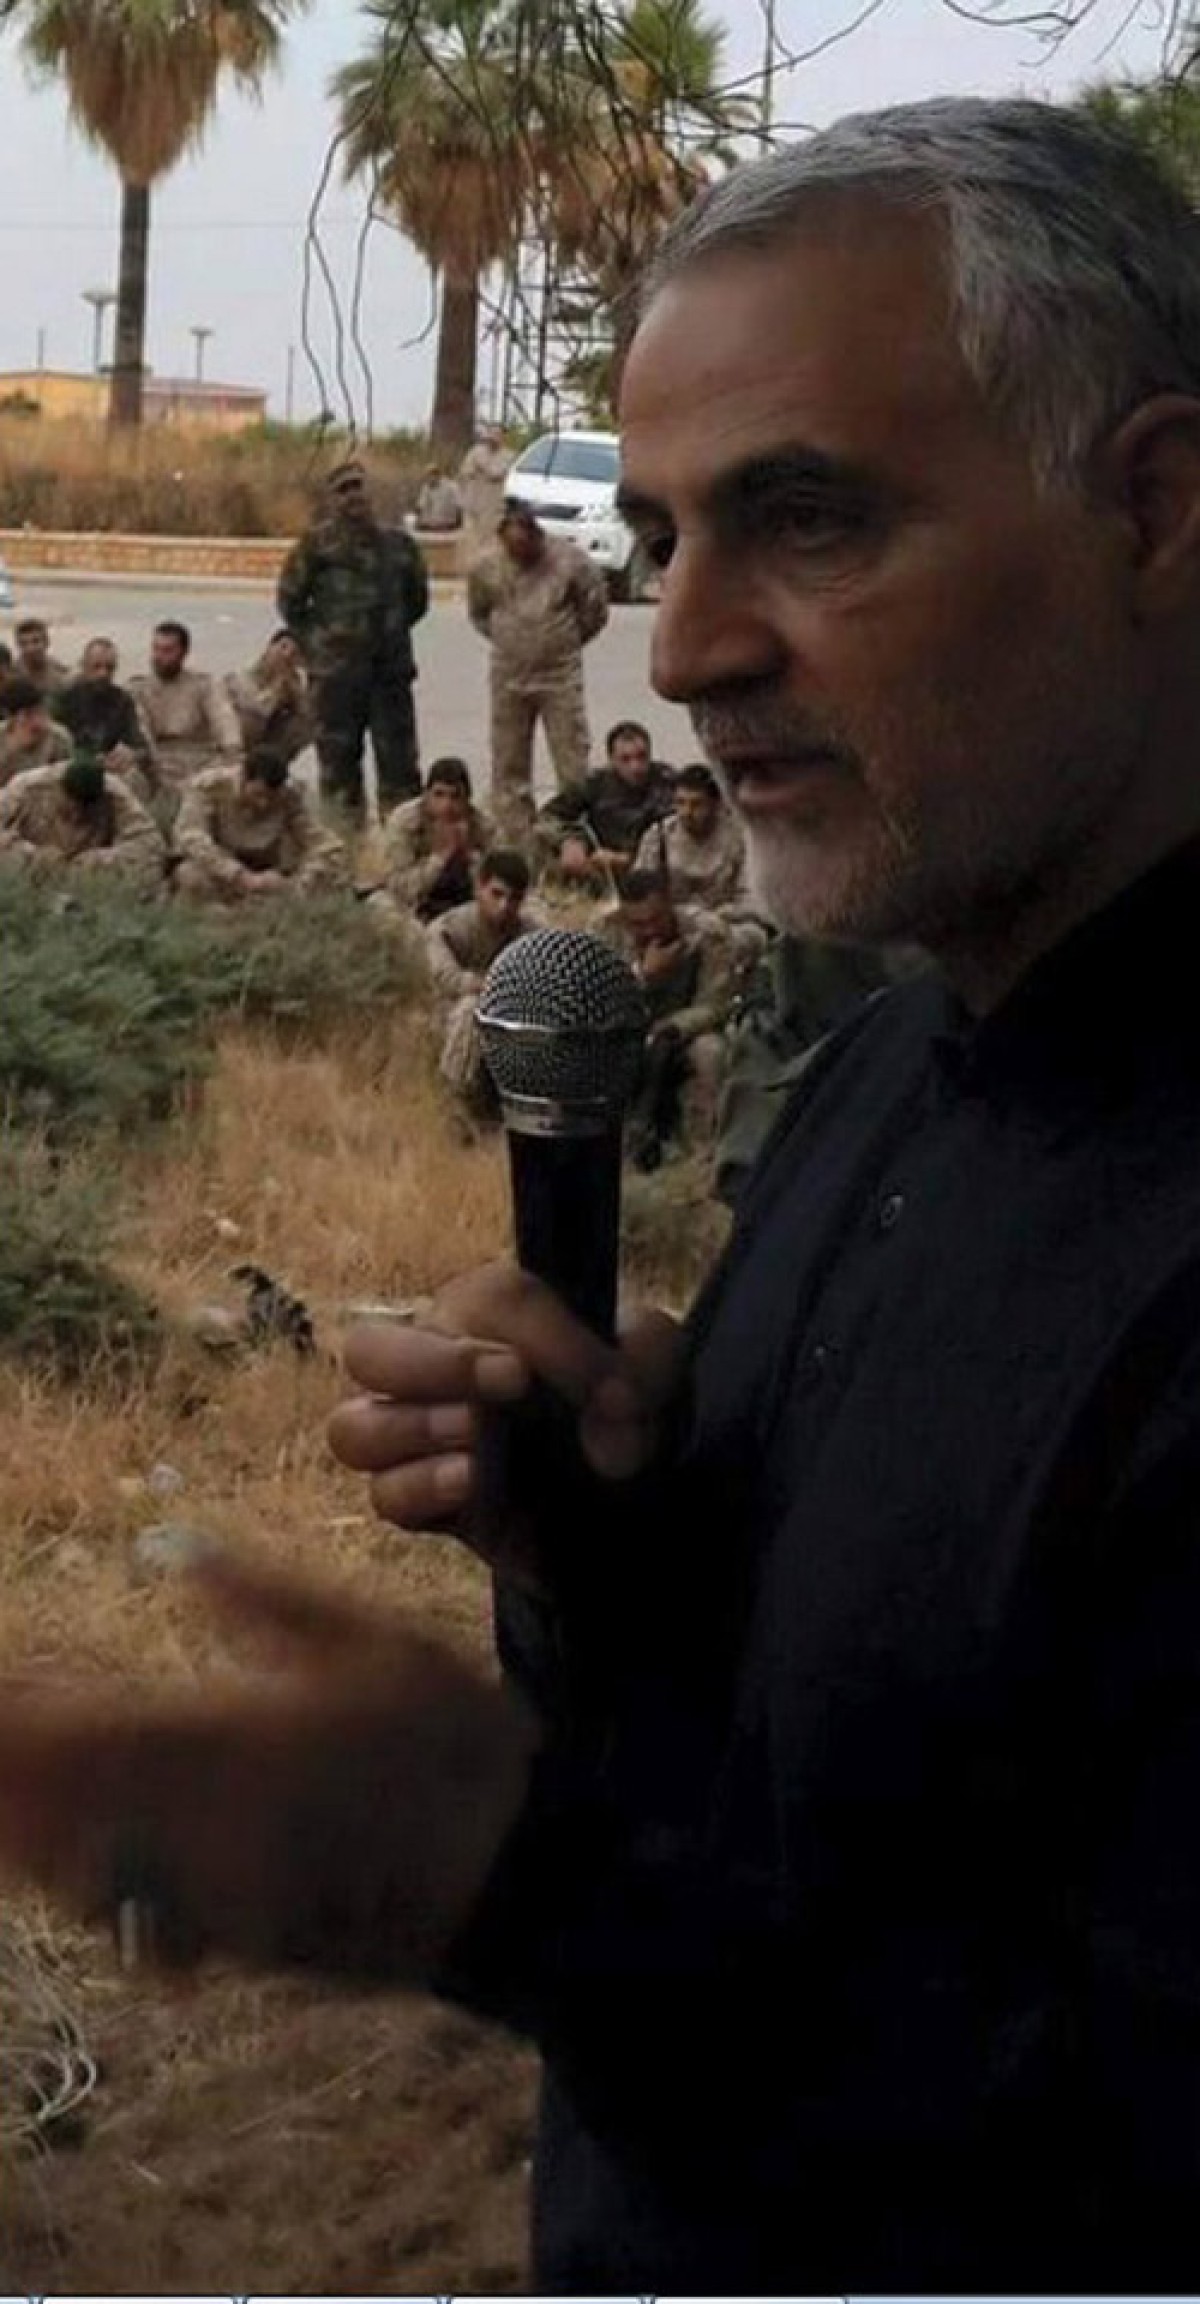  Qassem Soleimani: The Career of an Iranian Legendary Commander